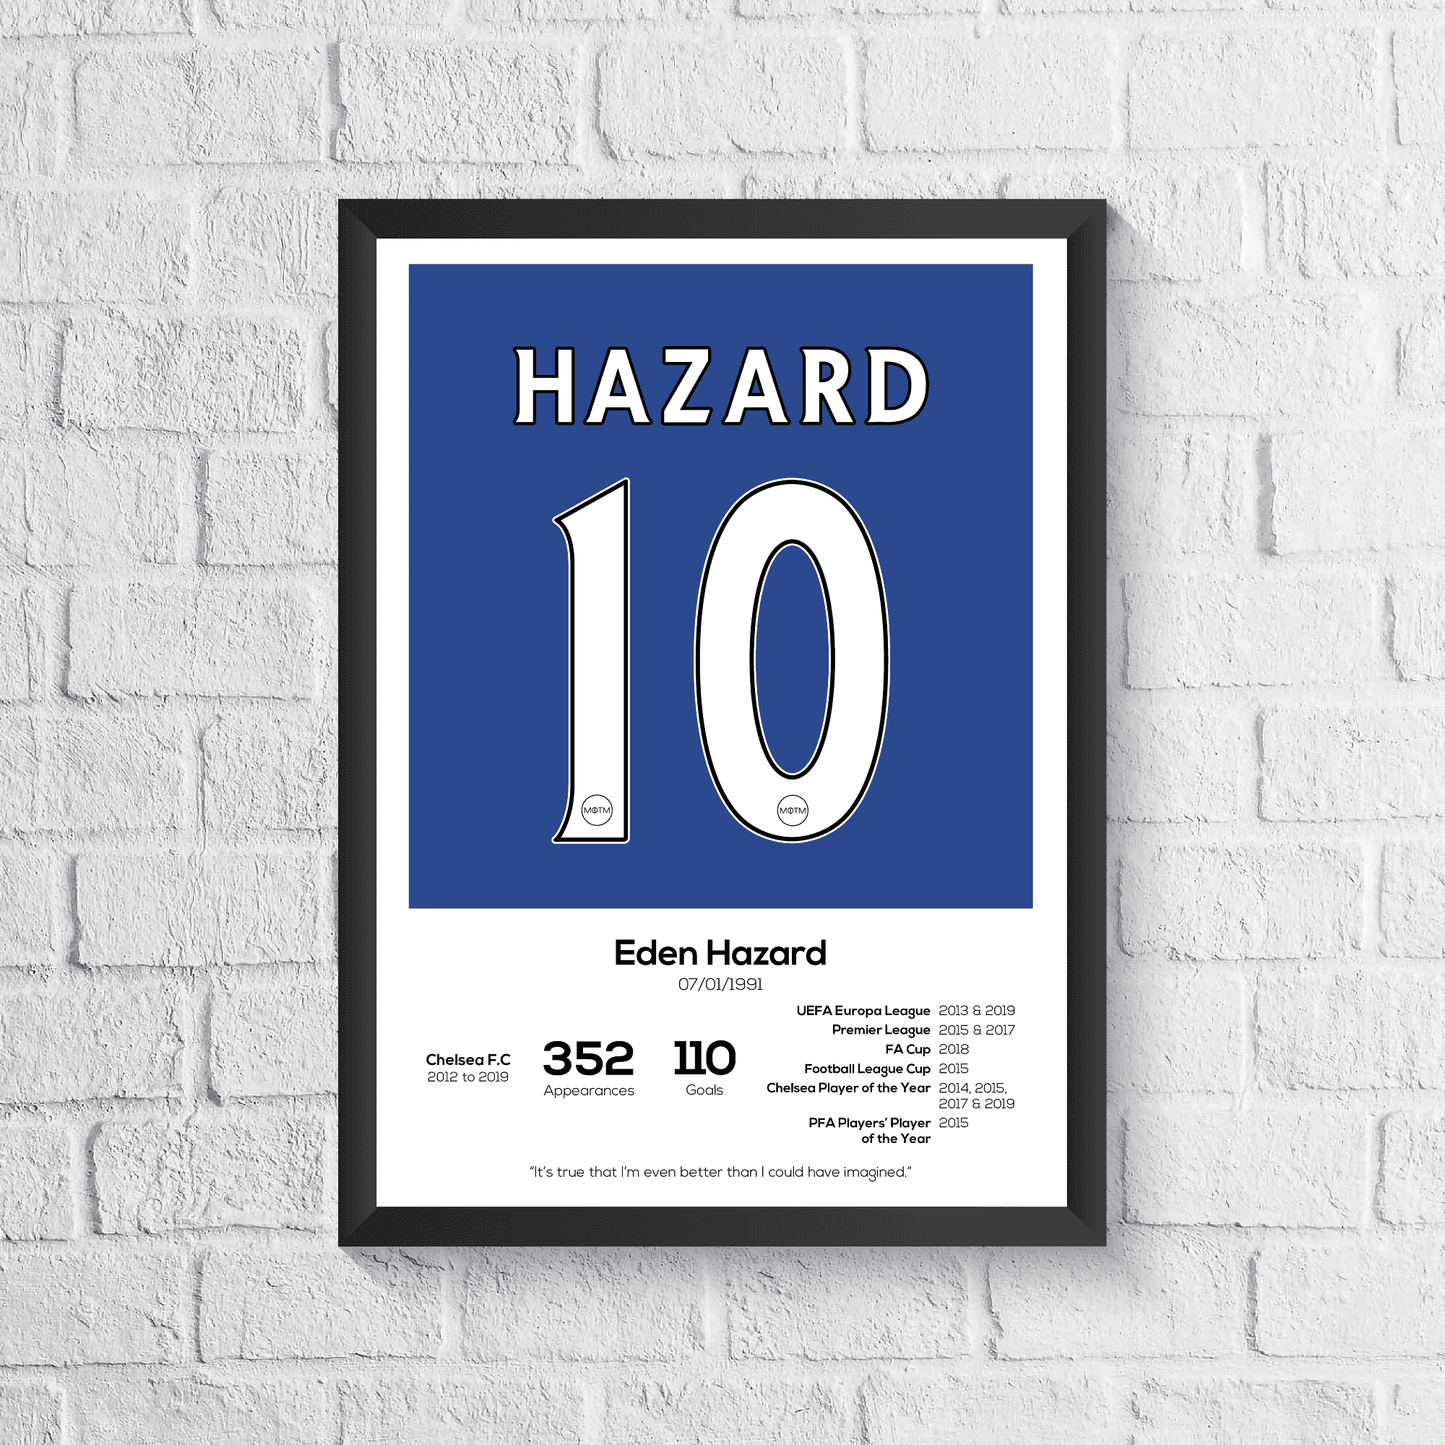 Eden Hazard Chelsea Legend Stats Print